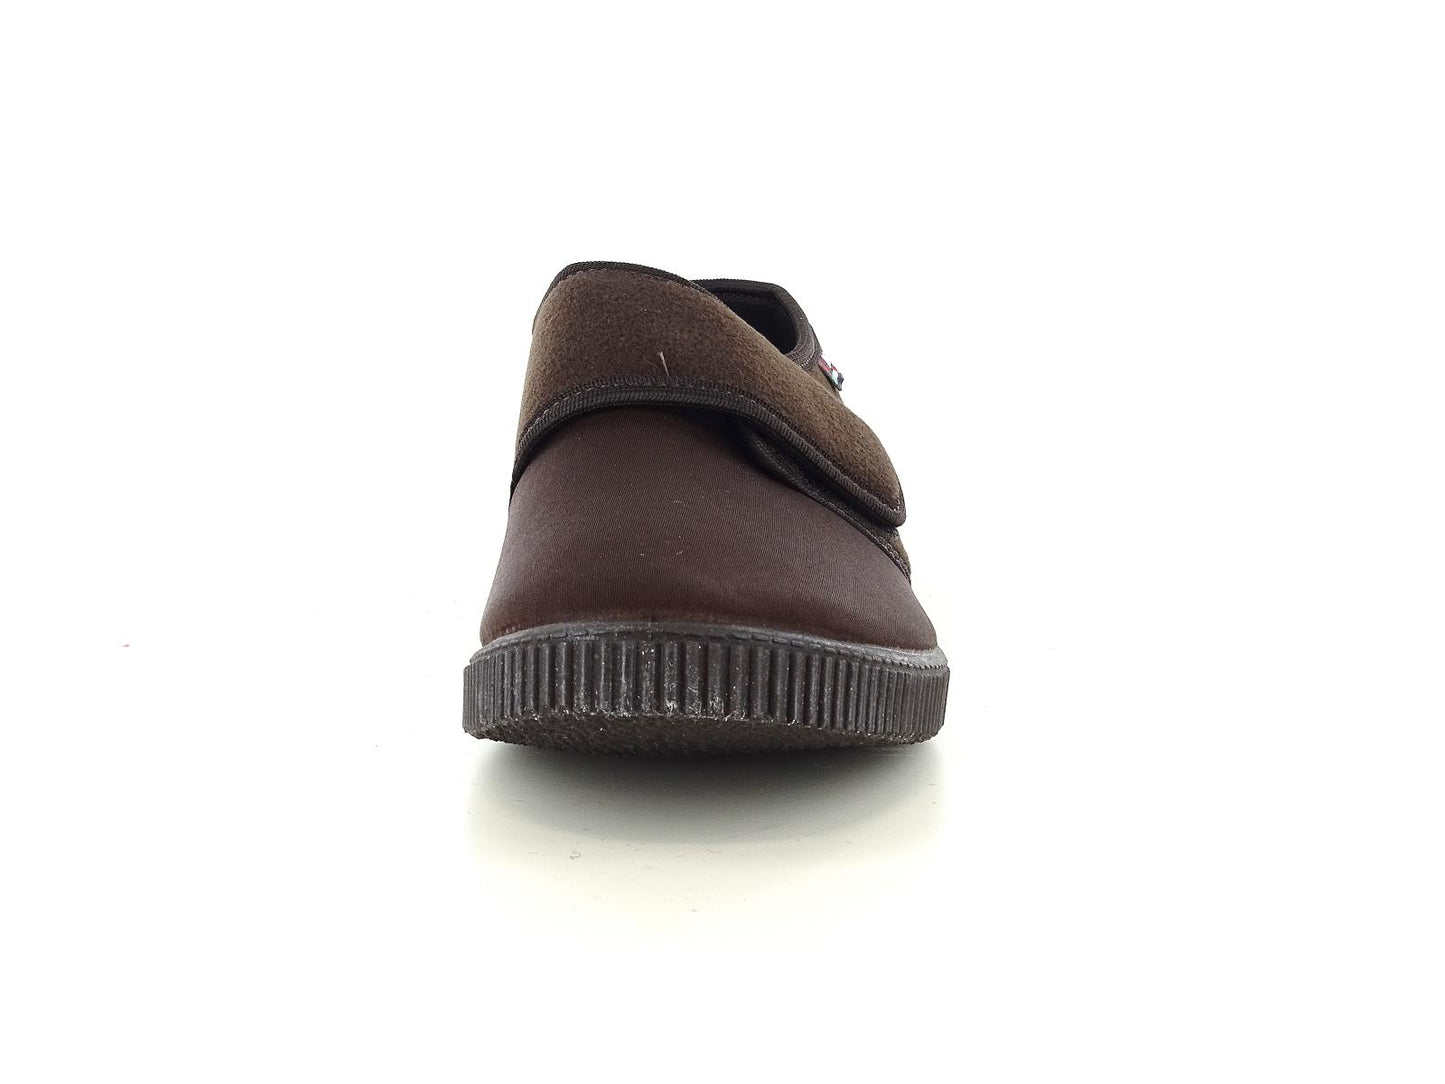 Gaviga 514 Scarpe pantofole invernali comfort da donna in pelle sintetica con strappo nel colore nero.